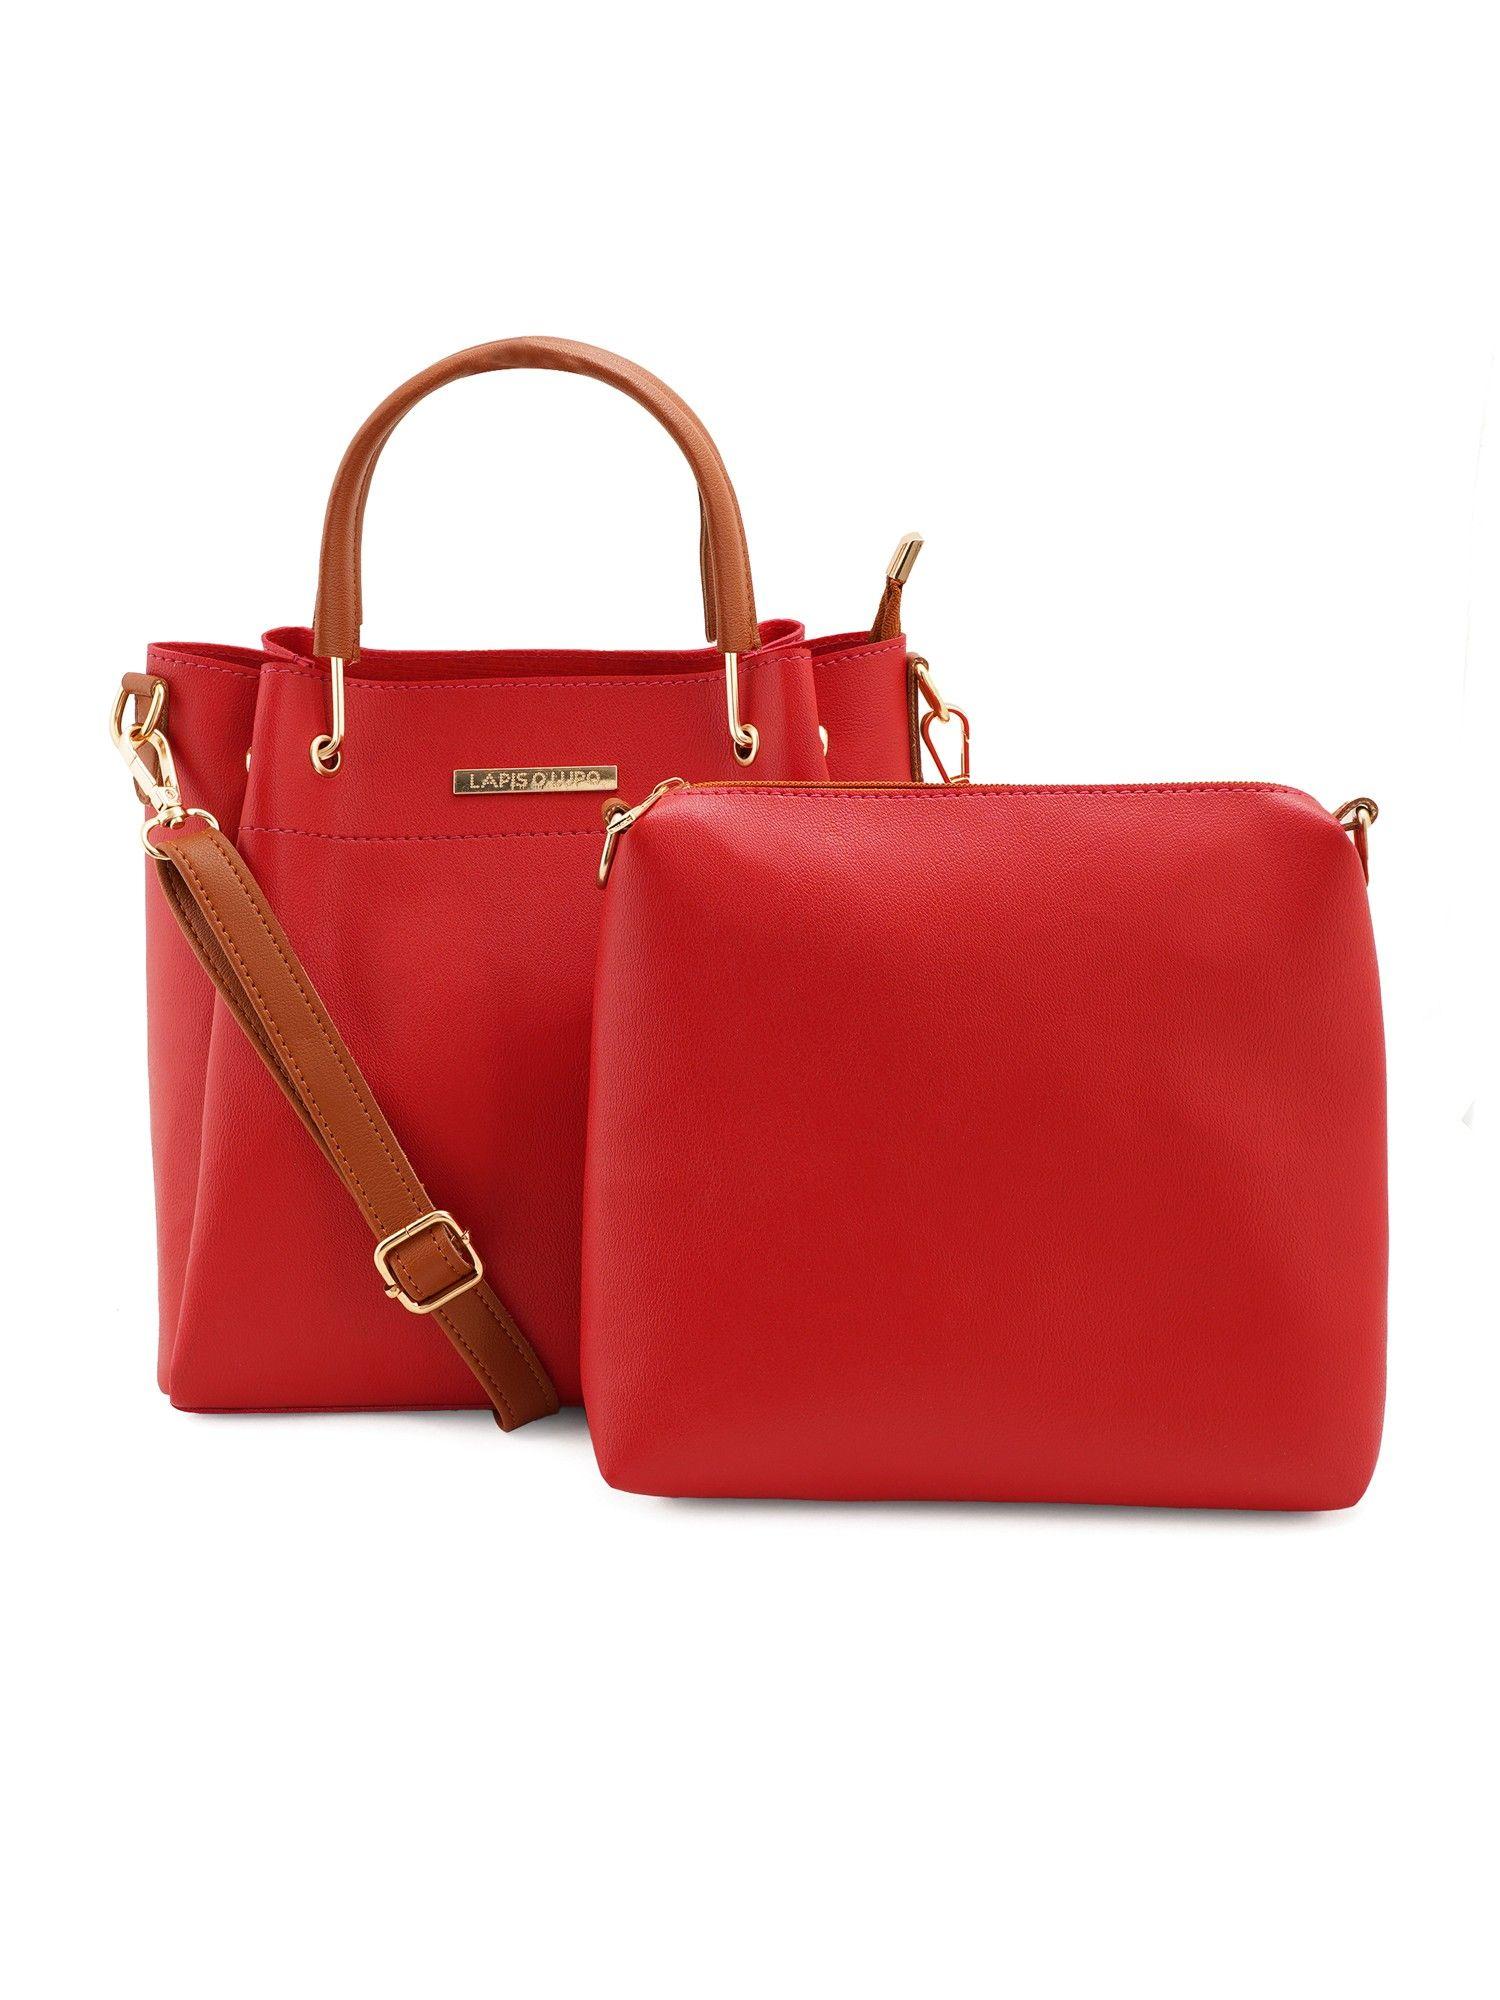 Women Handbag and Sling Bag Combo (Set of 2)